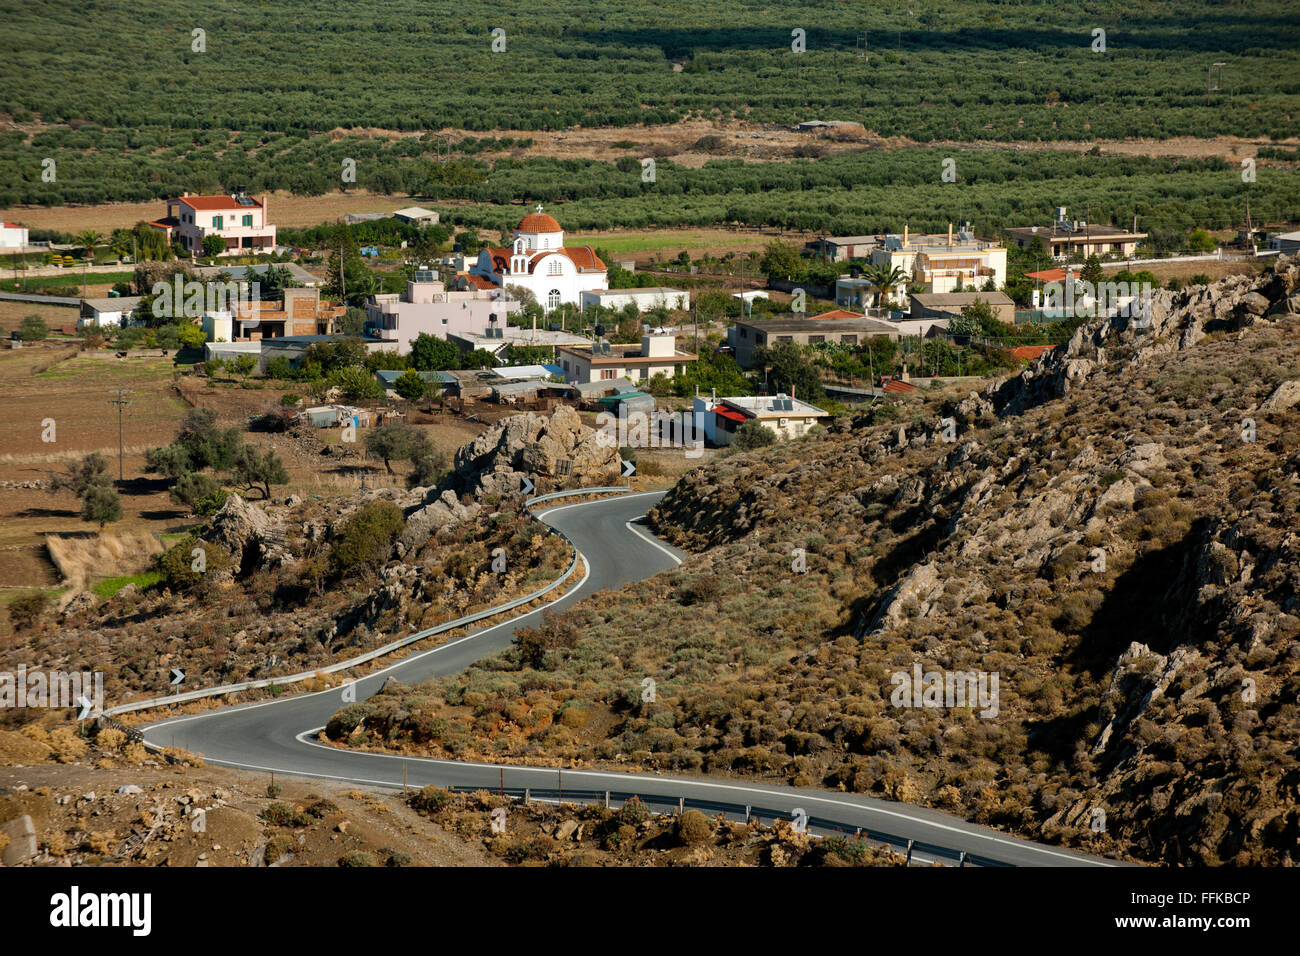 Griechenland, Kreta, Messara-Ebene, die fruchtbare Tiefebene ist mit 40 km Länge und 20 Km Breite die grösste Kretas. Blick von Stock Photo